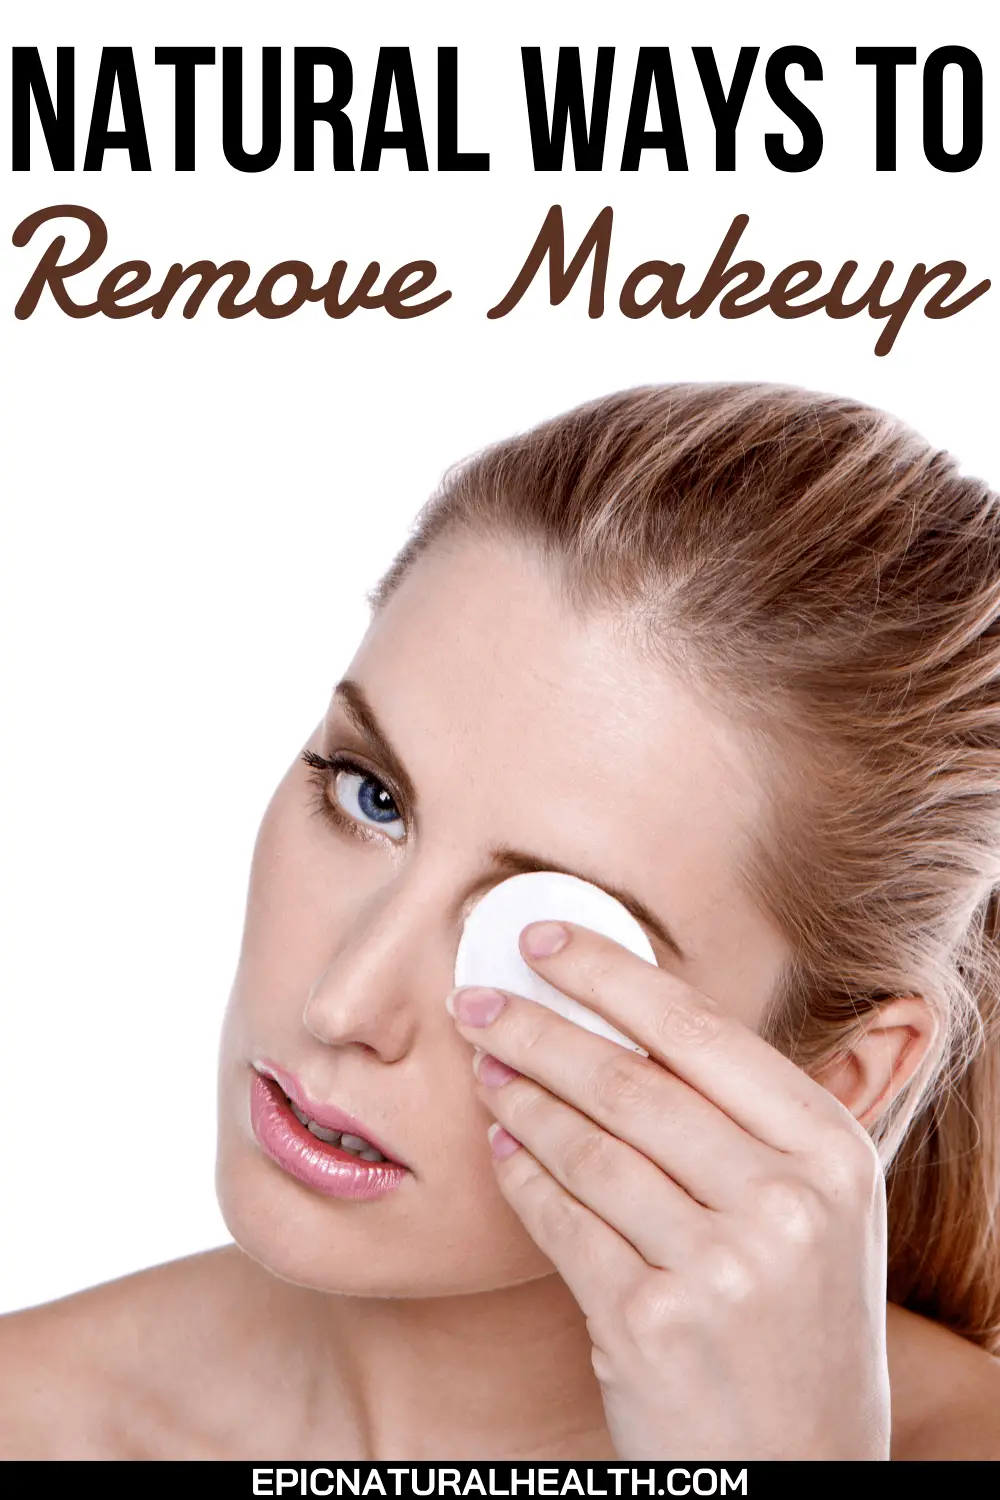 Natural ways to remove makeup